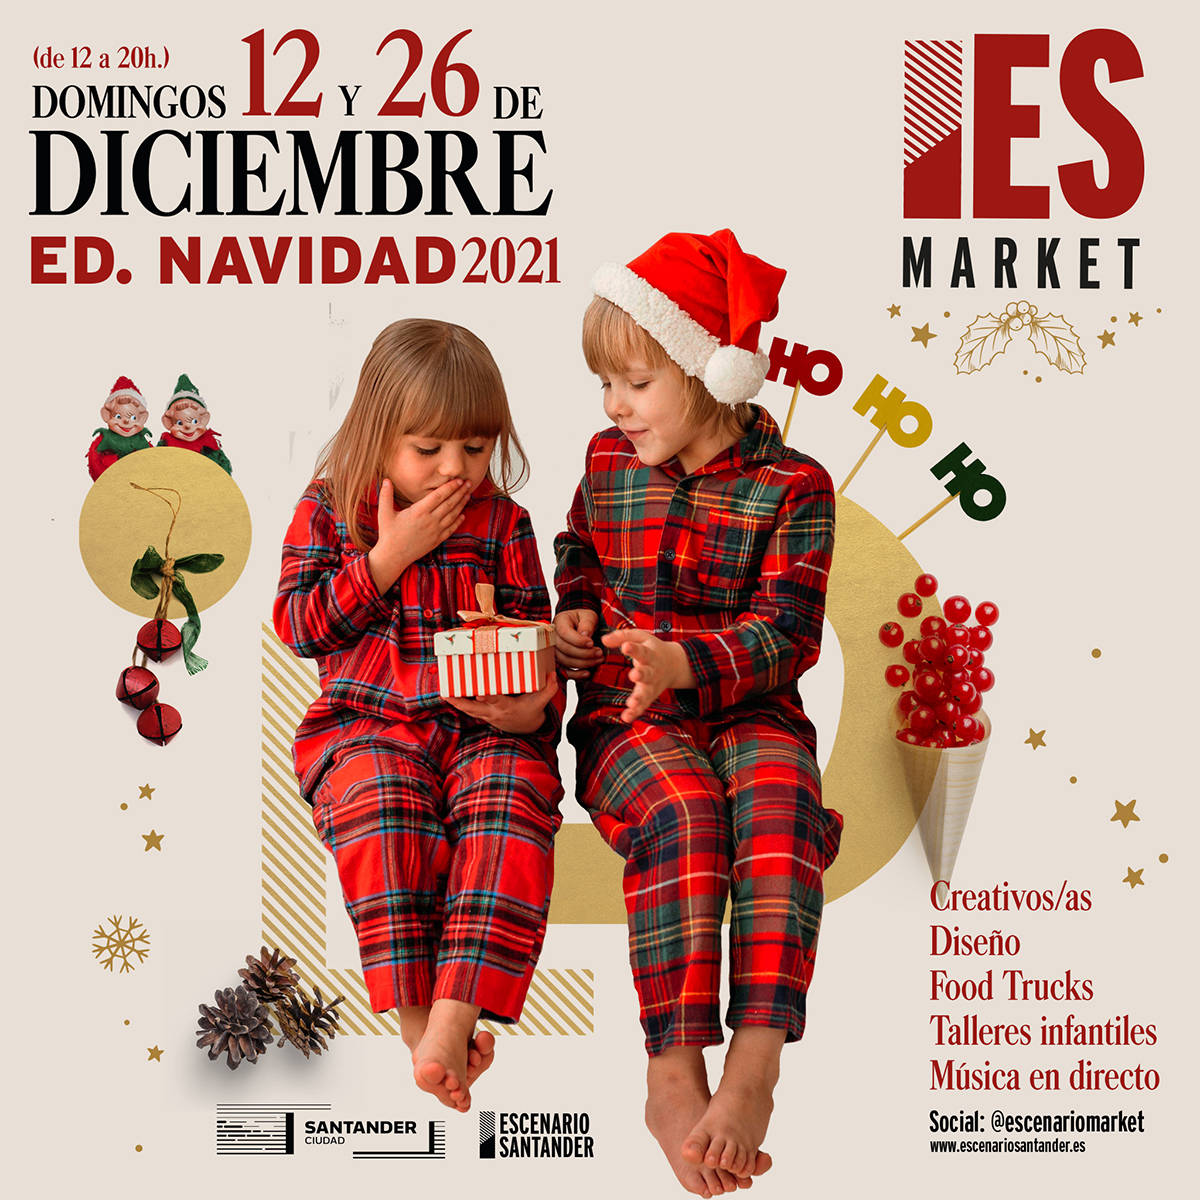 Escenario Market Navidad 2021 en Escenario Santander